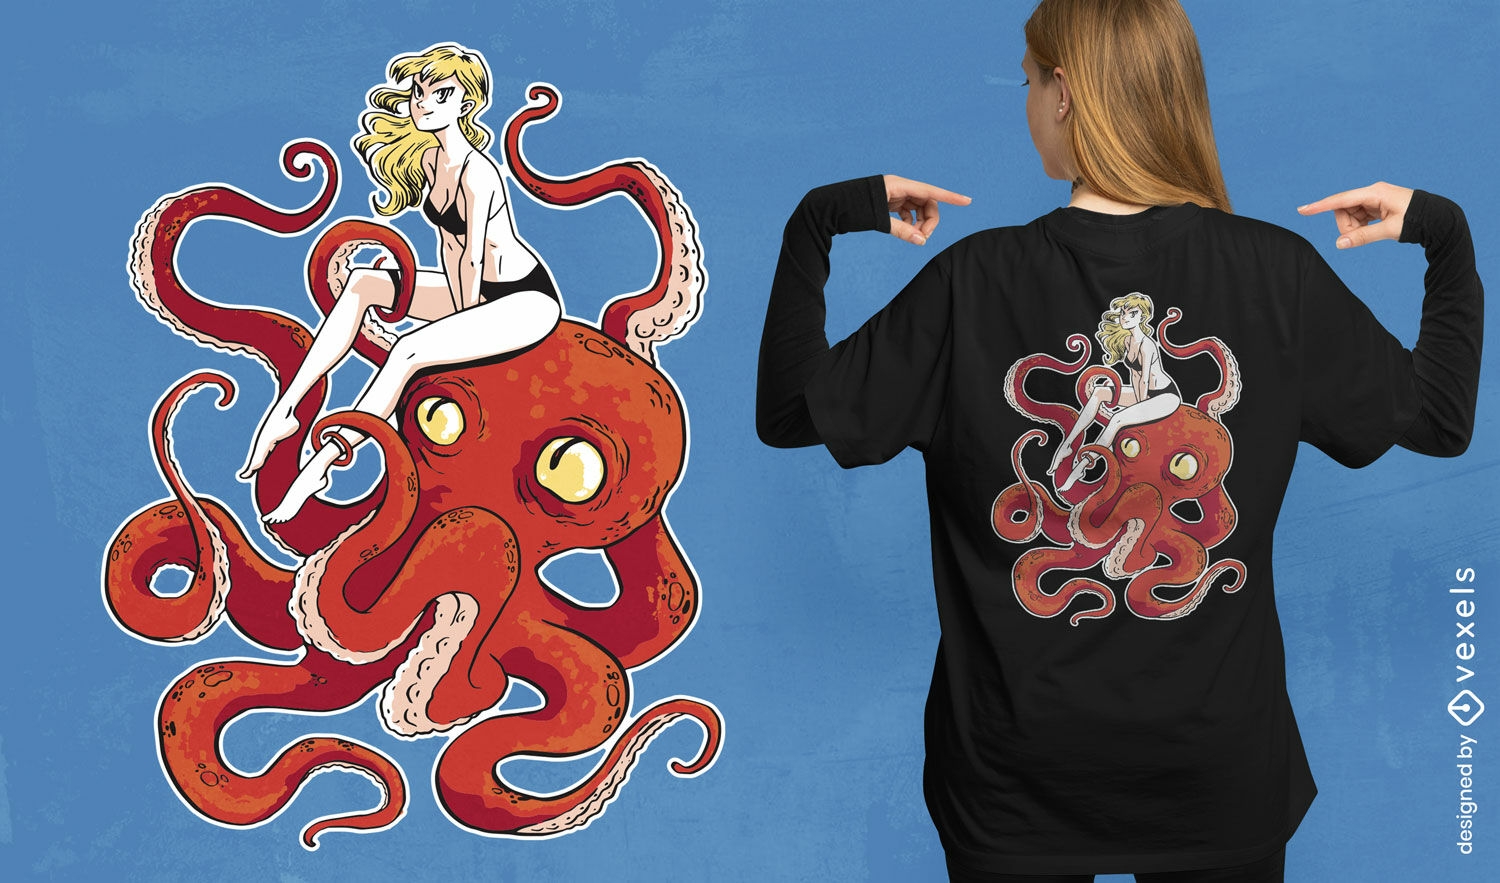 M?dchen auf einem Oktopus-T-Shirt-Design